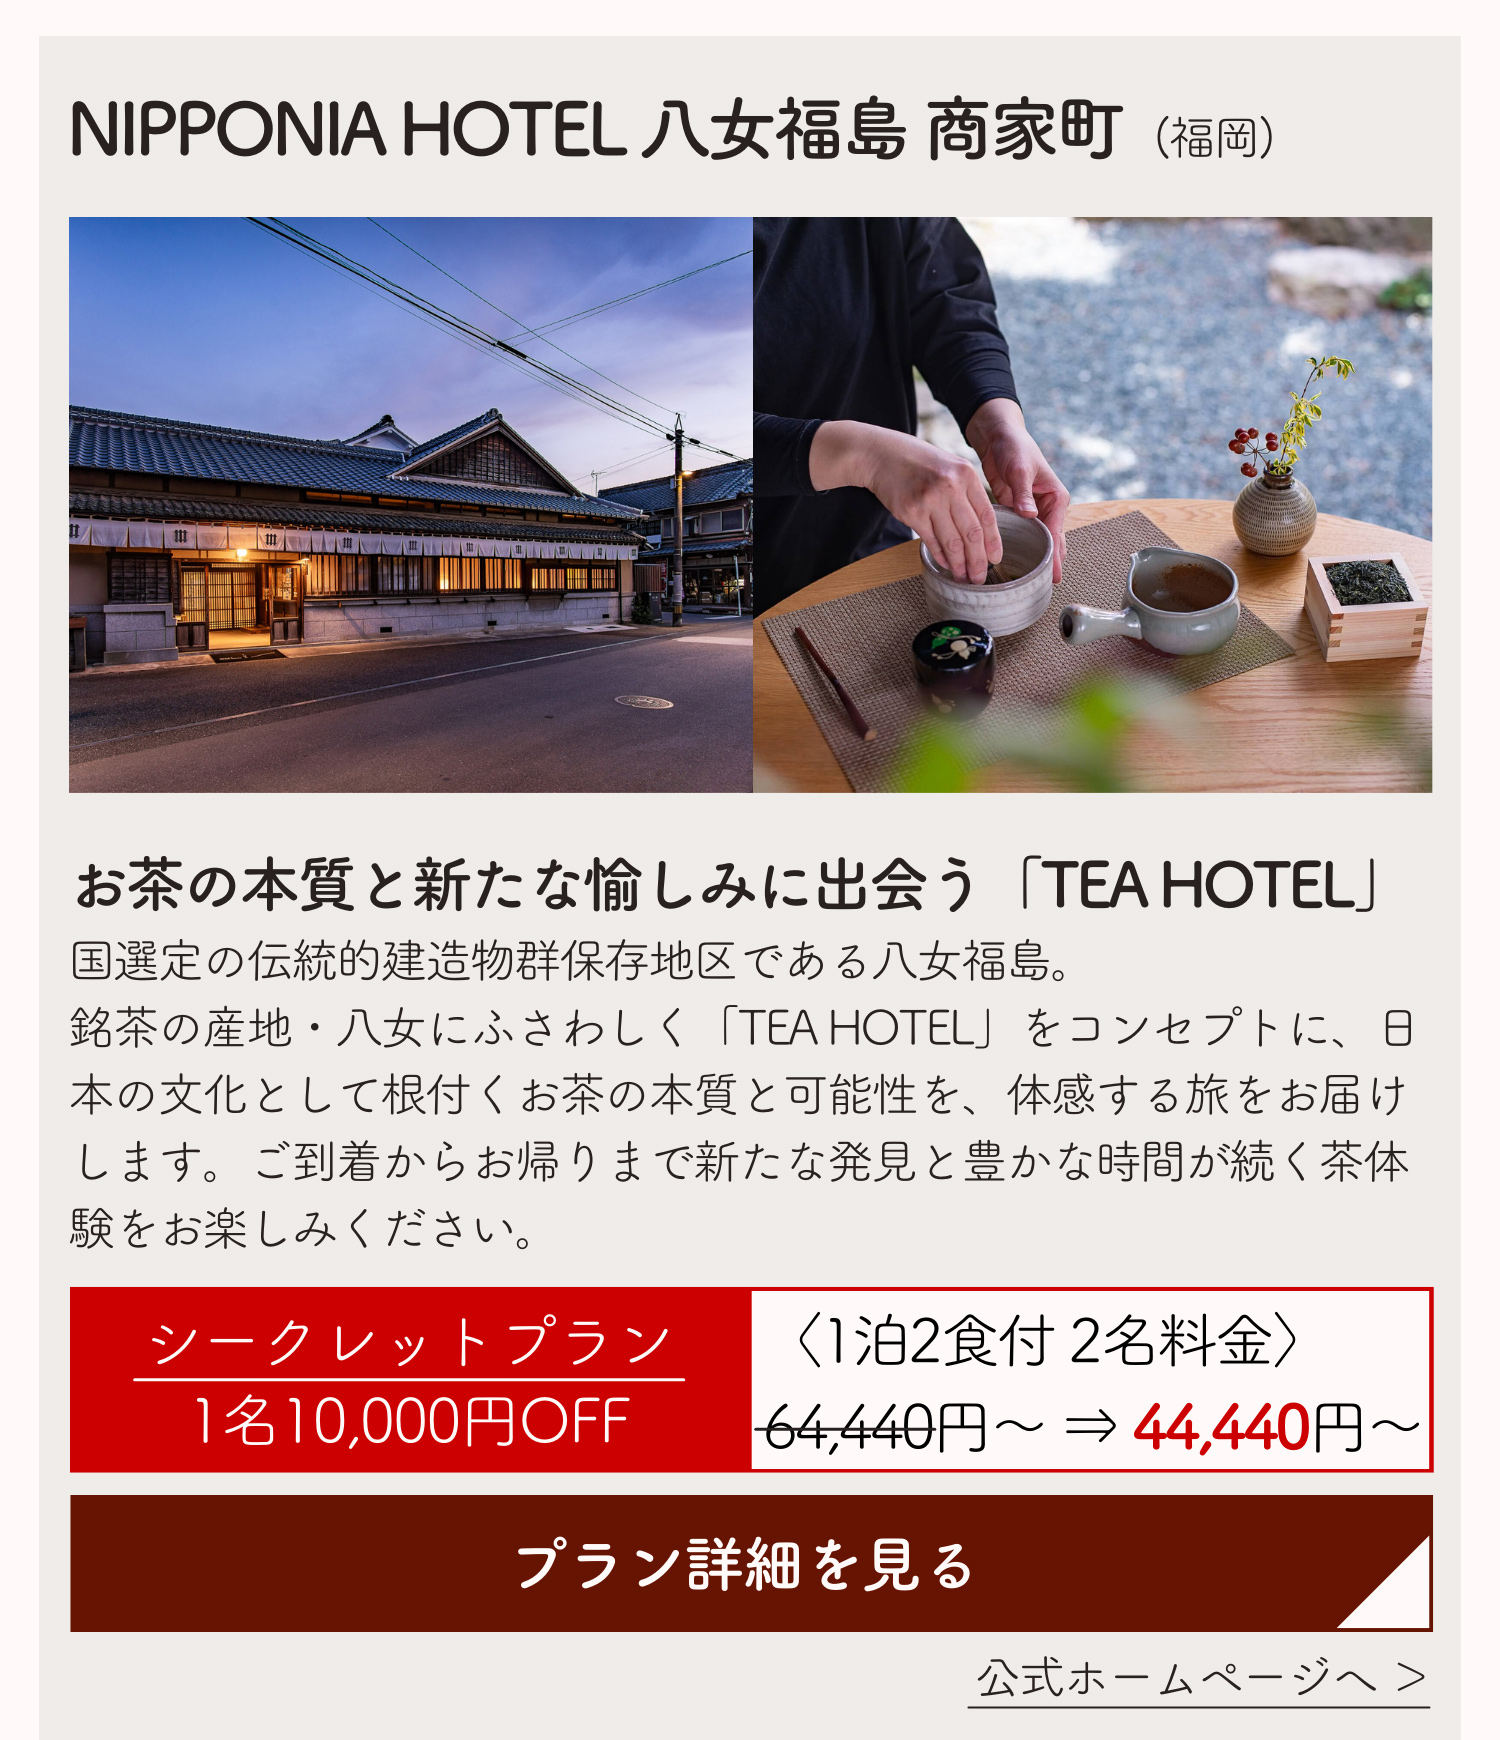 NIPPONIA HOTEL 八女福島 商家町(福岡)